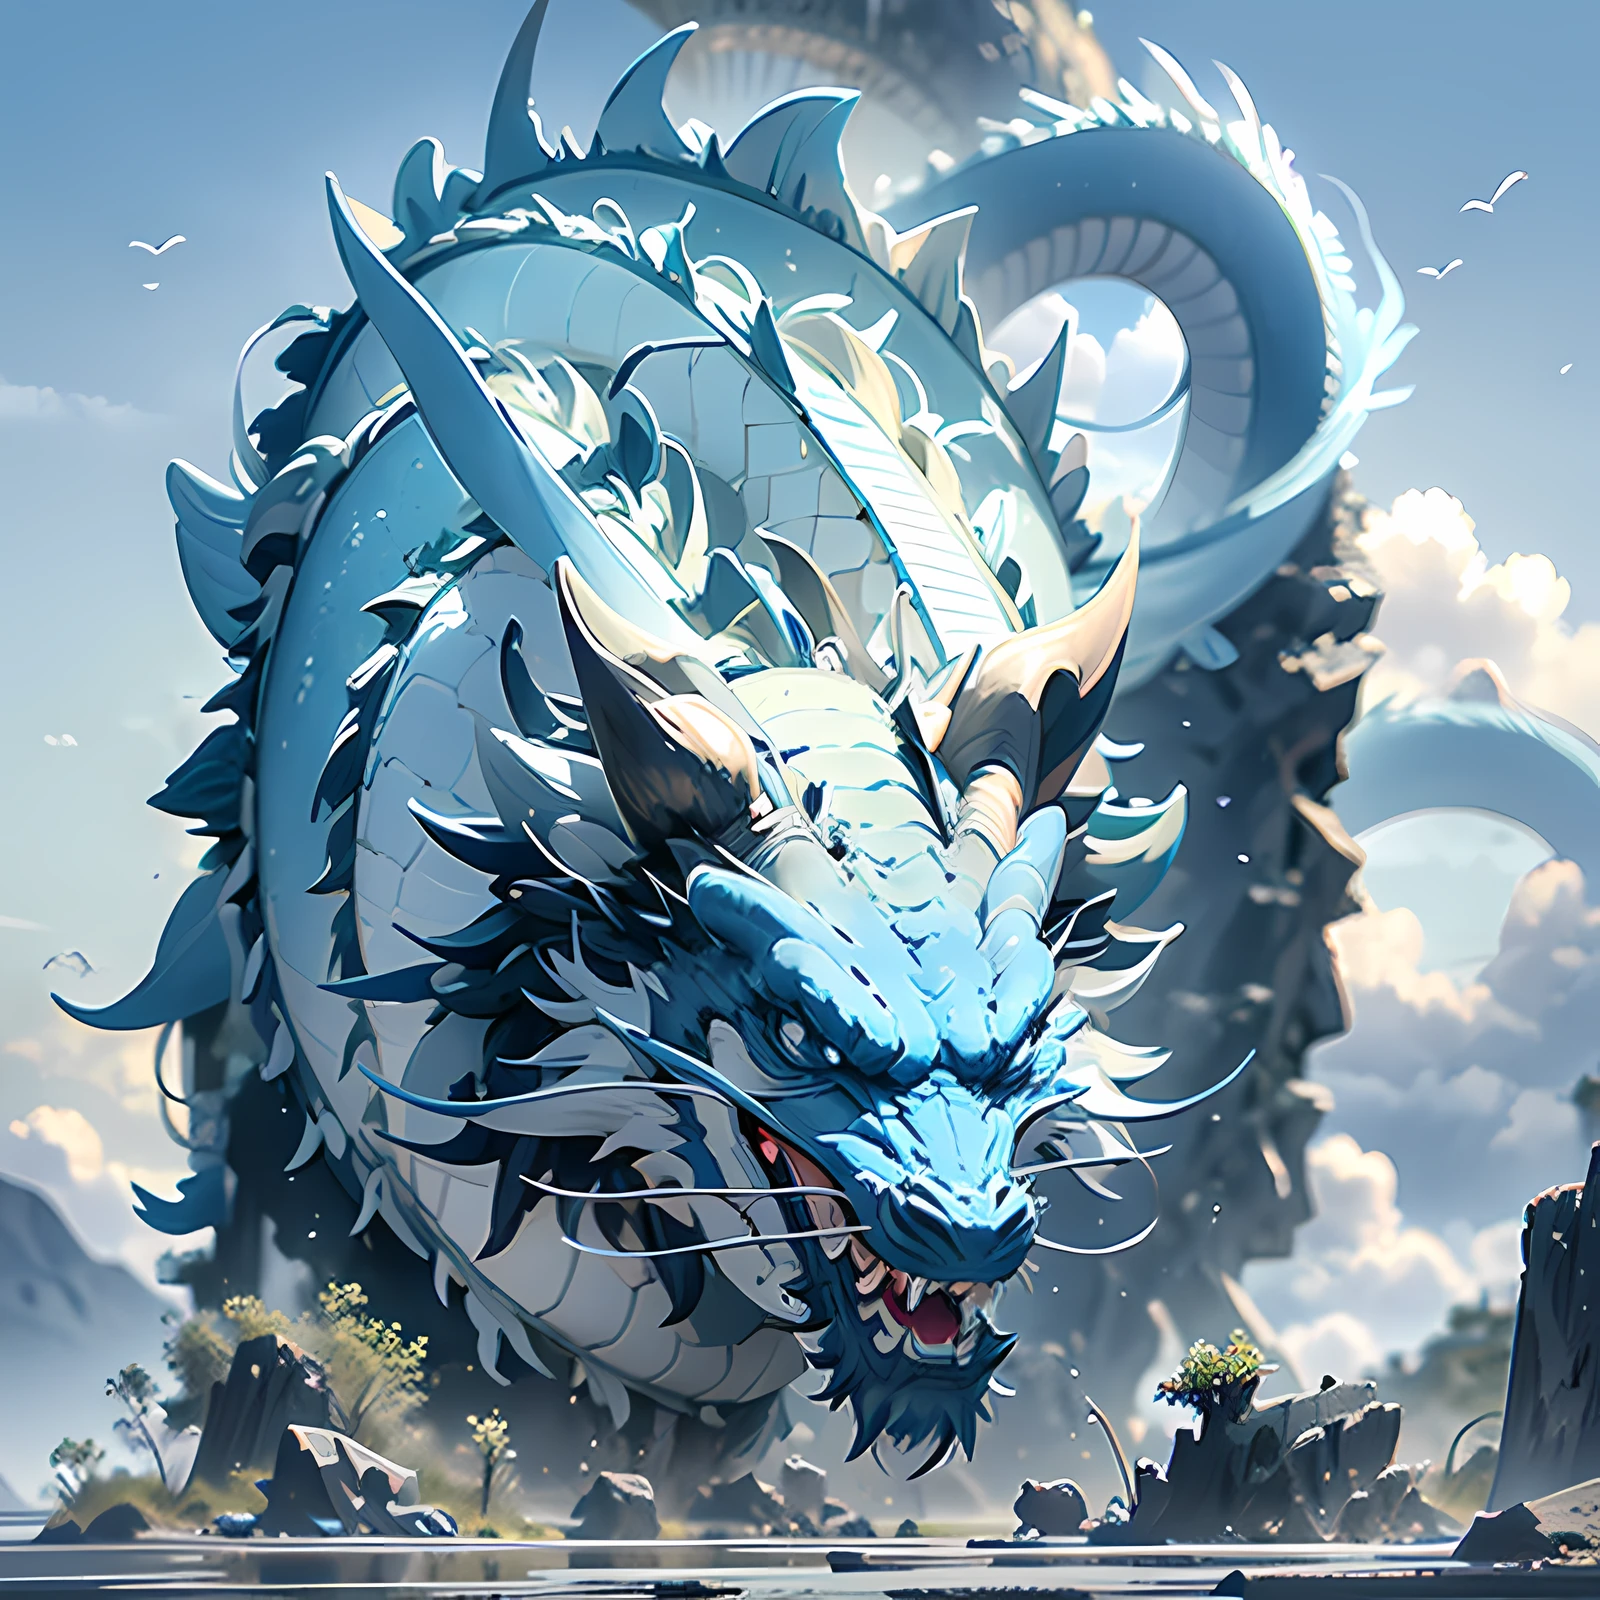 On the ilha, há um dragão chinês congelado azul, ilhota, ilha, dentes afiados, 4K, Super Detalhe,